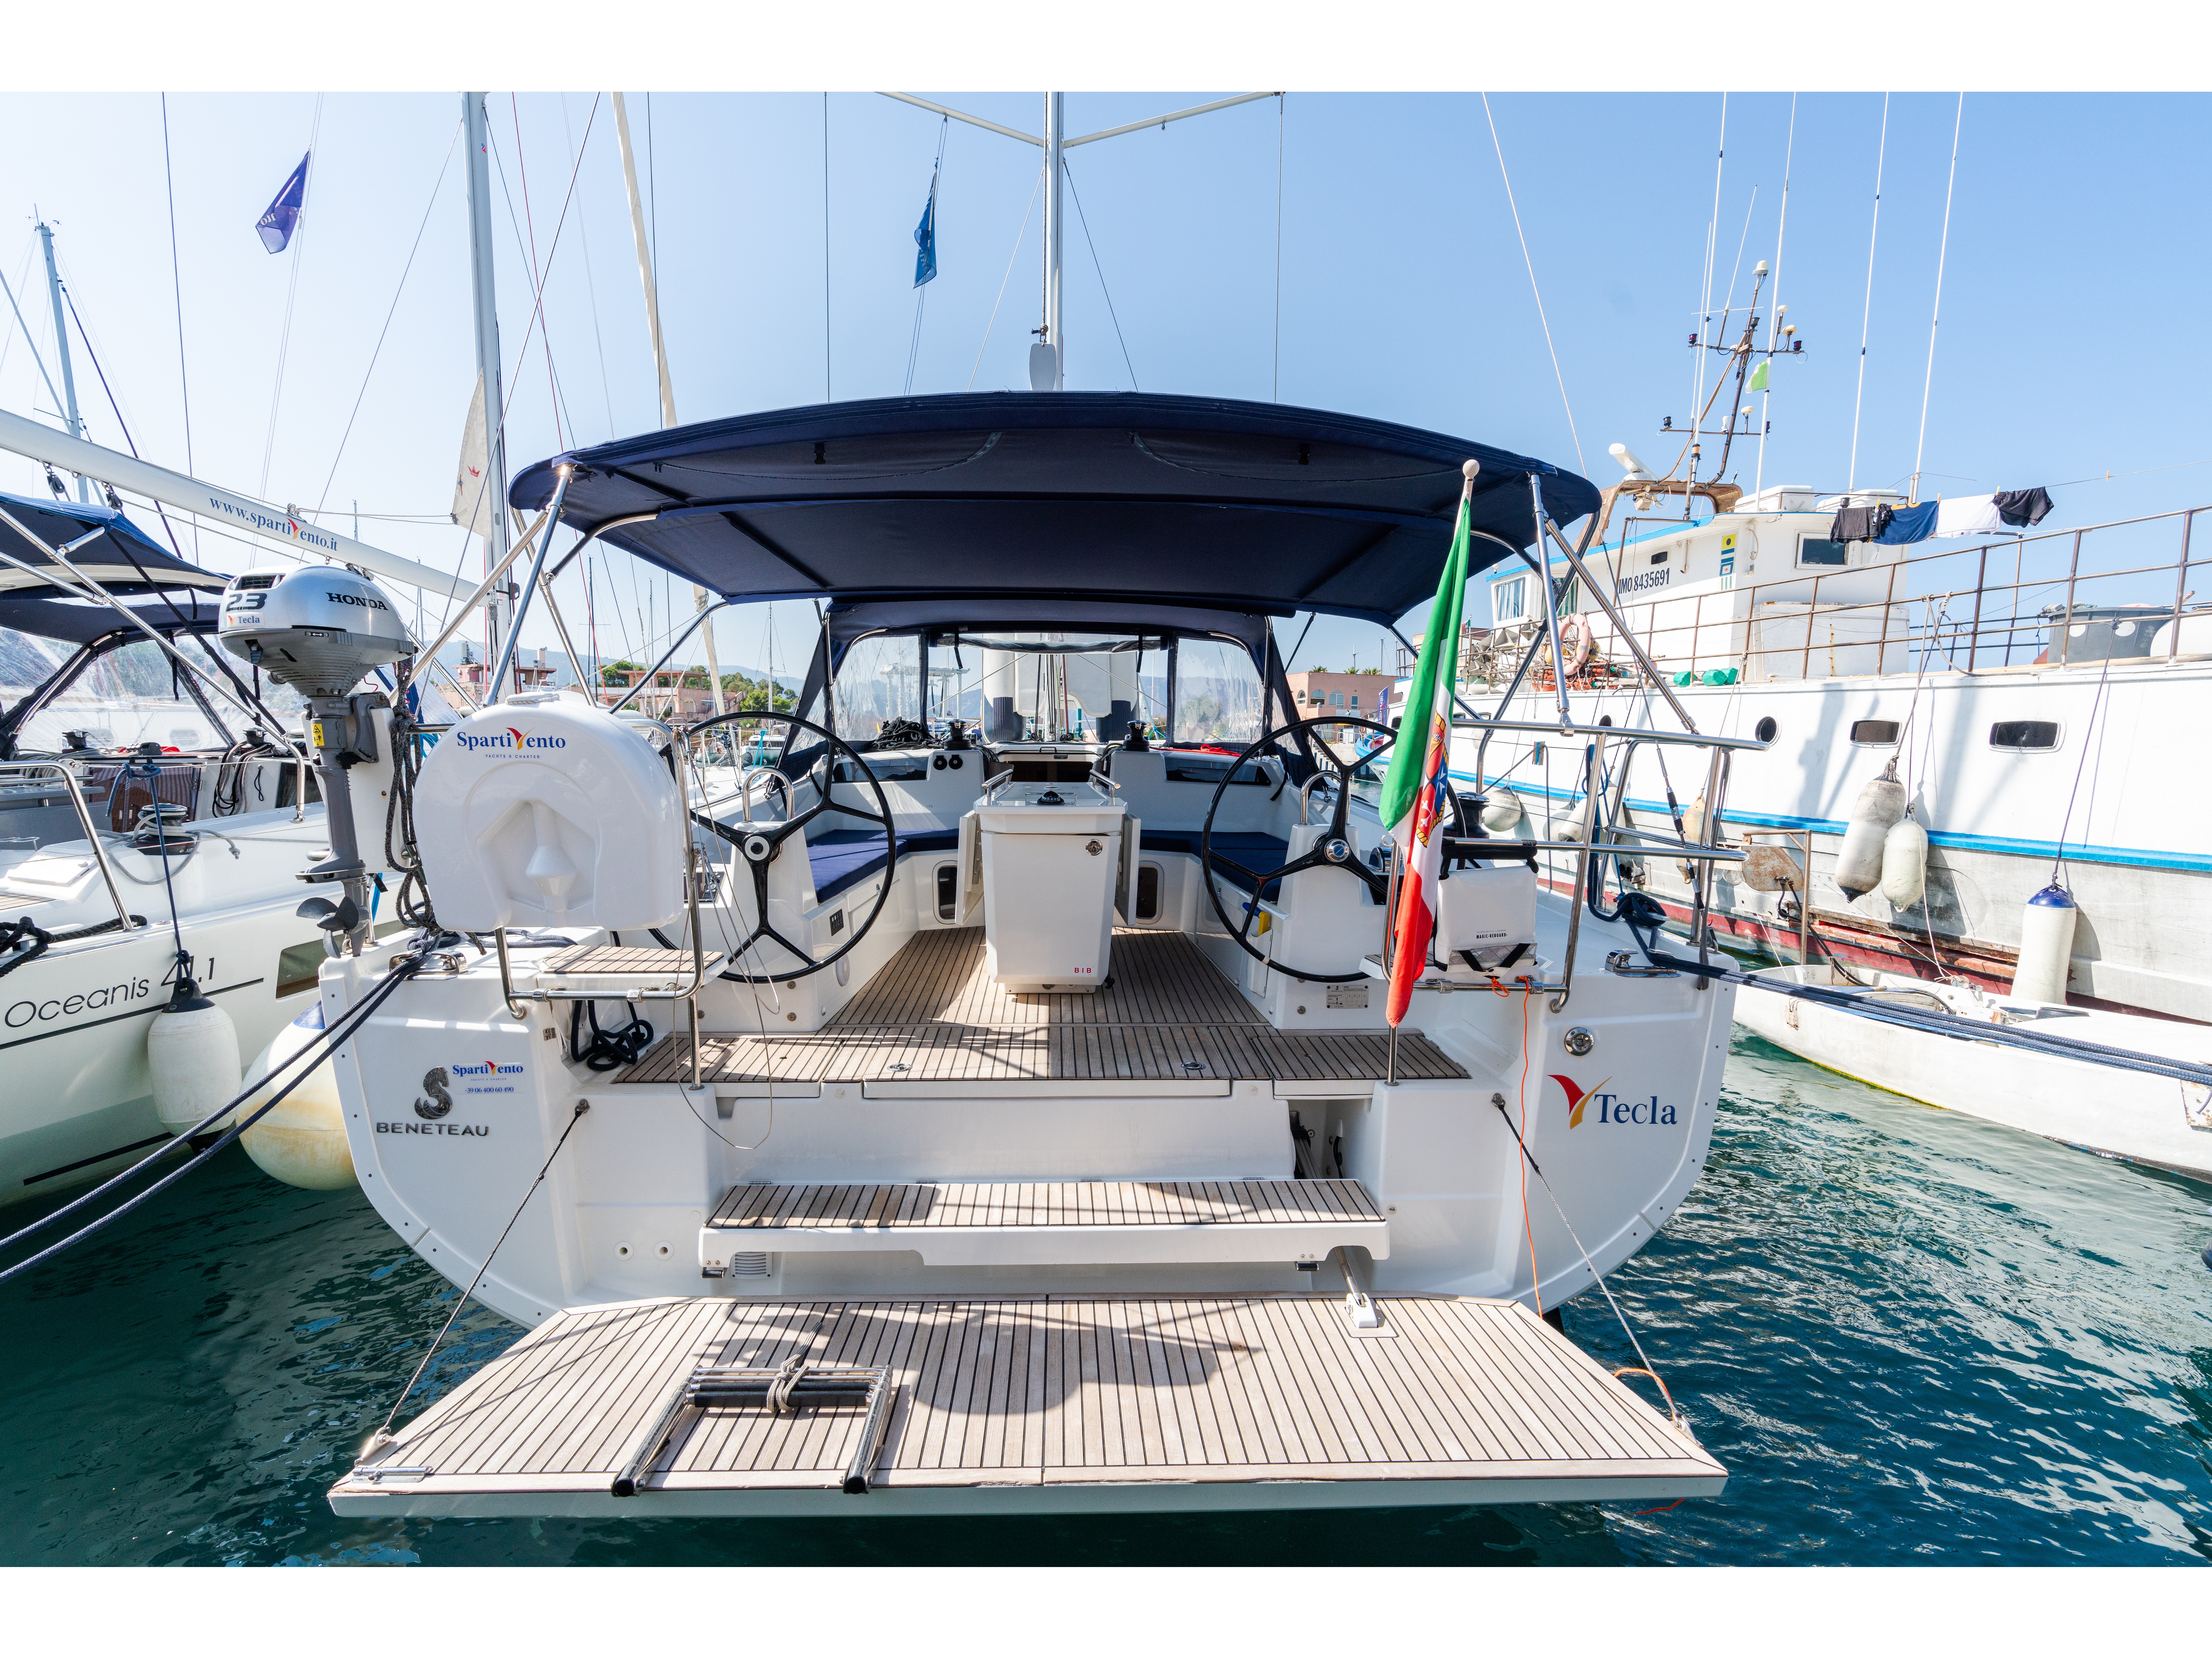 Oceanis 40.1 - Yacht Charter Capo d'Orlando & Boat hire in Italy Sicily Aeolian Islands Capo d'Orlando Capo d'Orlando Marina 2